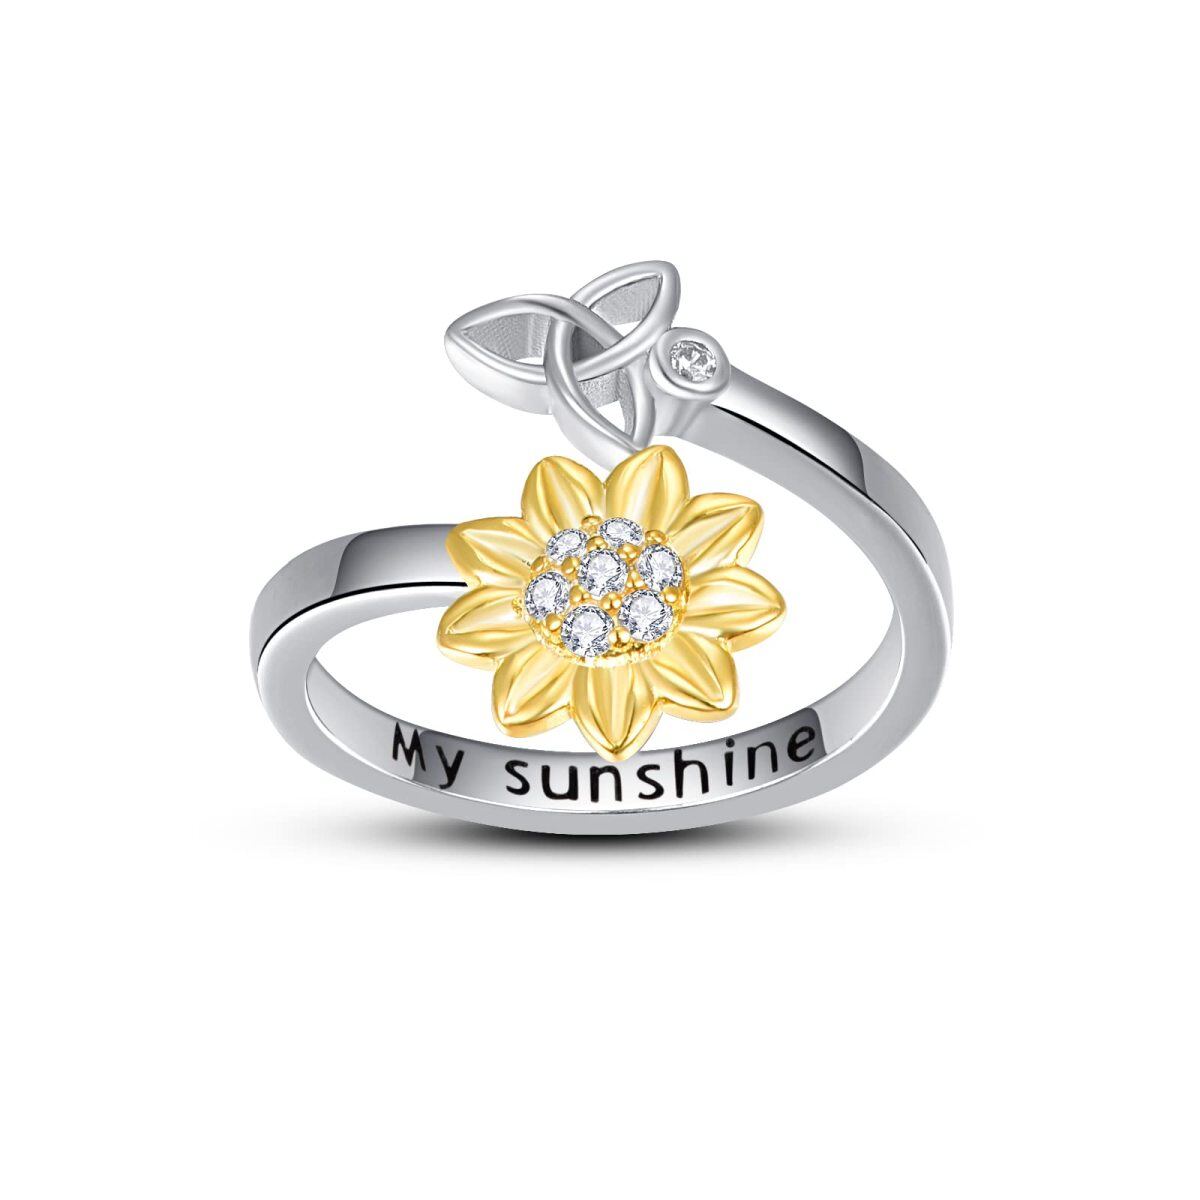 Offener Ring aus Sterlingsilber mit Gelbgold-Plattierung und kreisförmigem Zirkonia in Sonnenblumenform mit keltischem Knoten und eingraviertem Wort-1